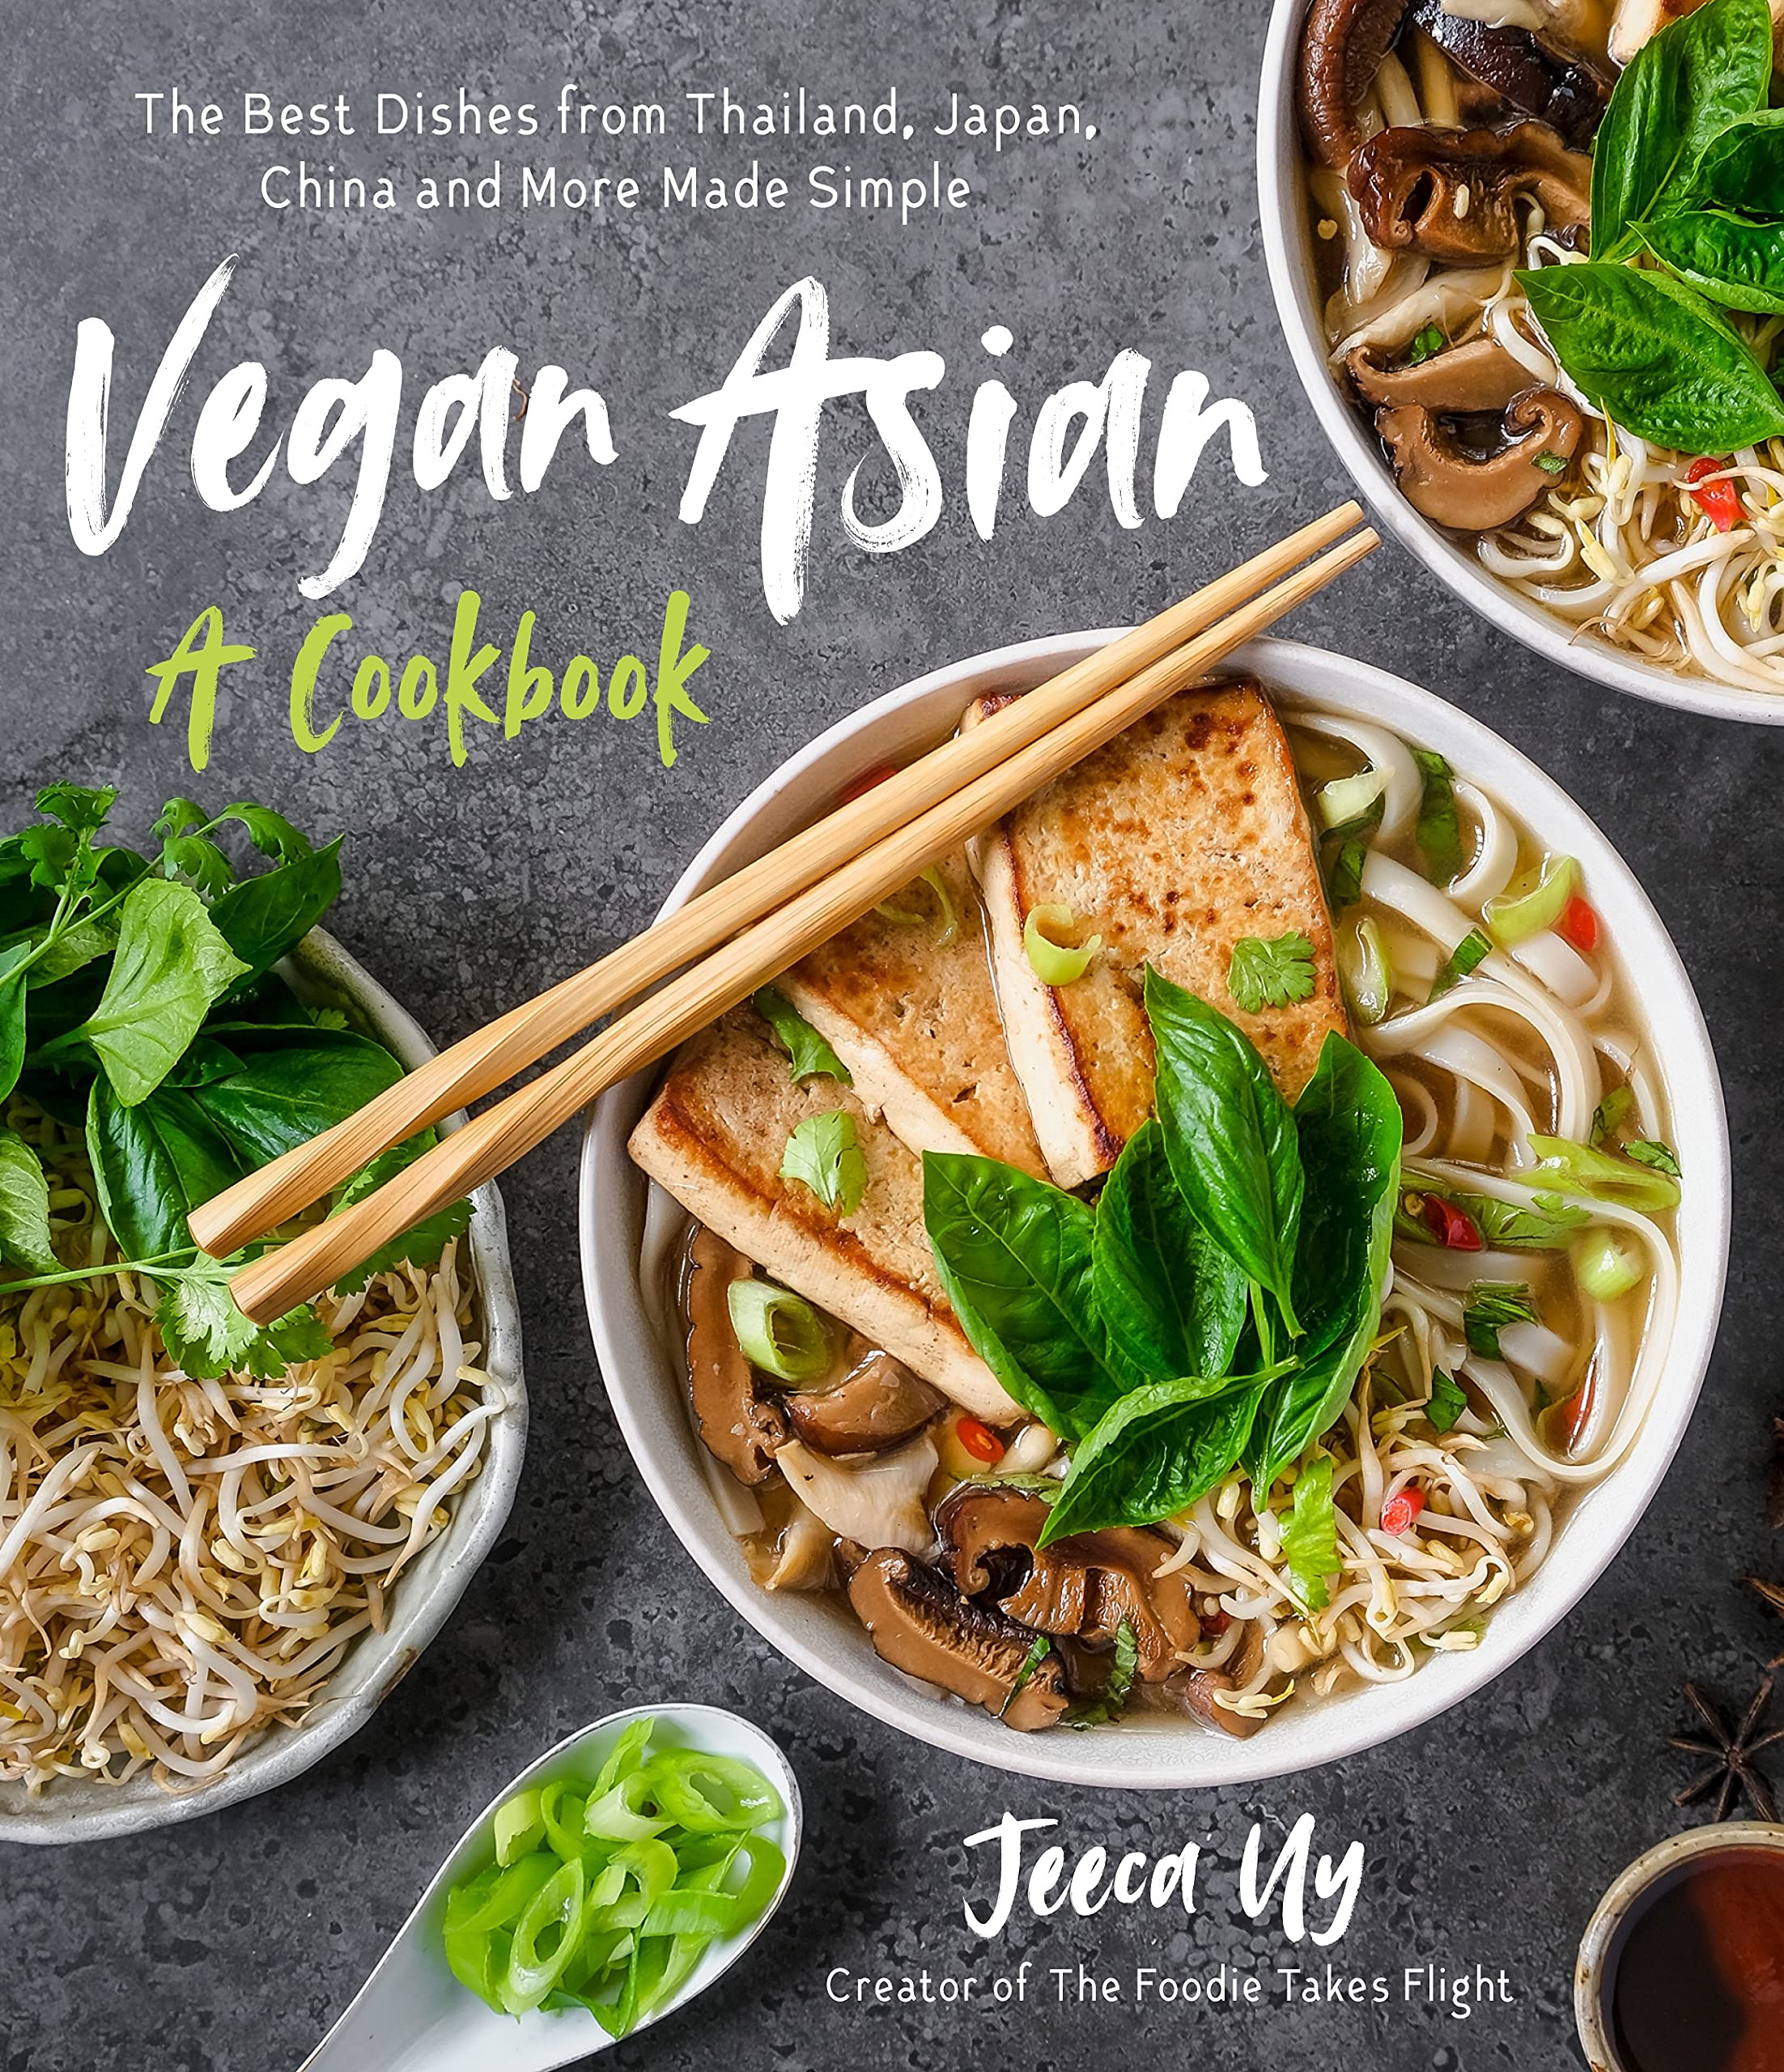 Vegan Asian